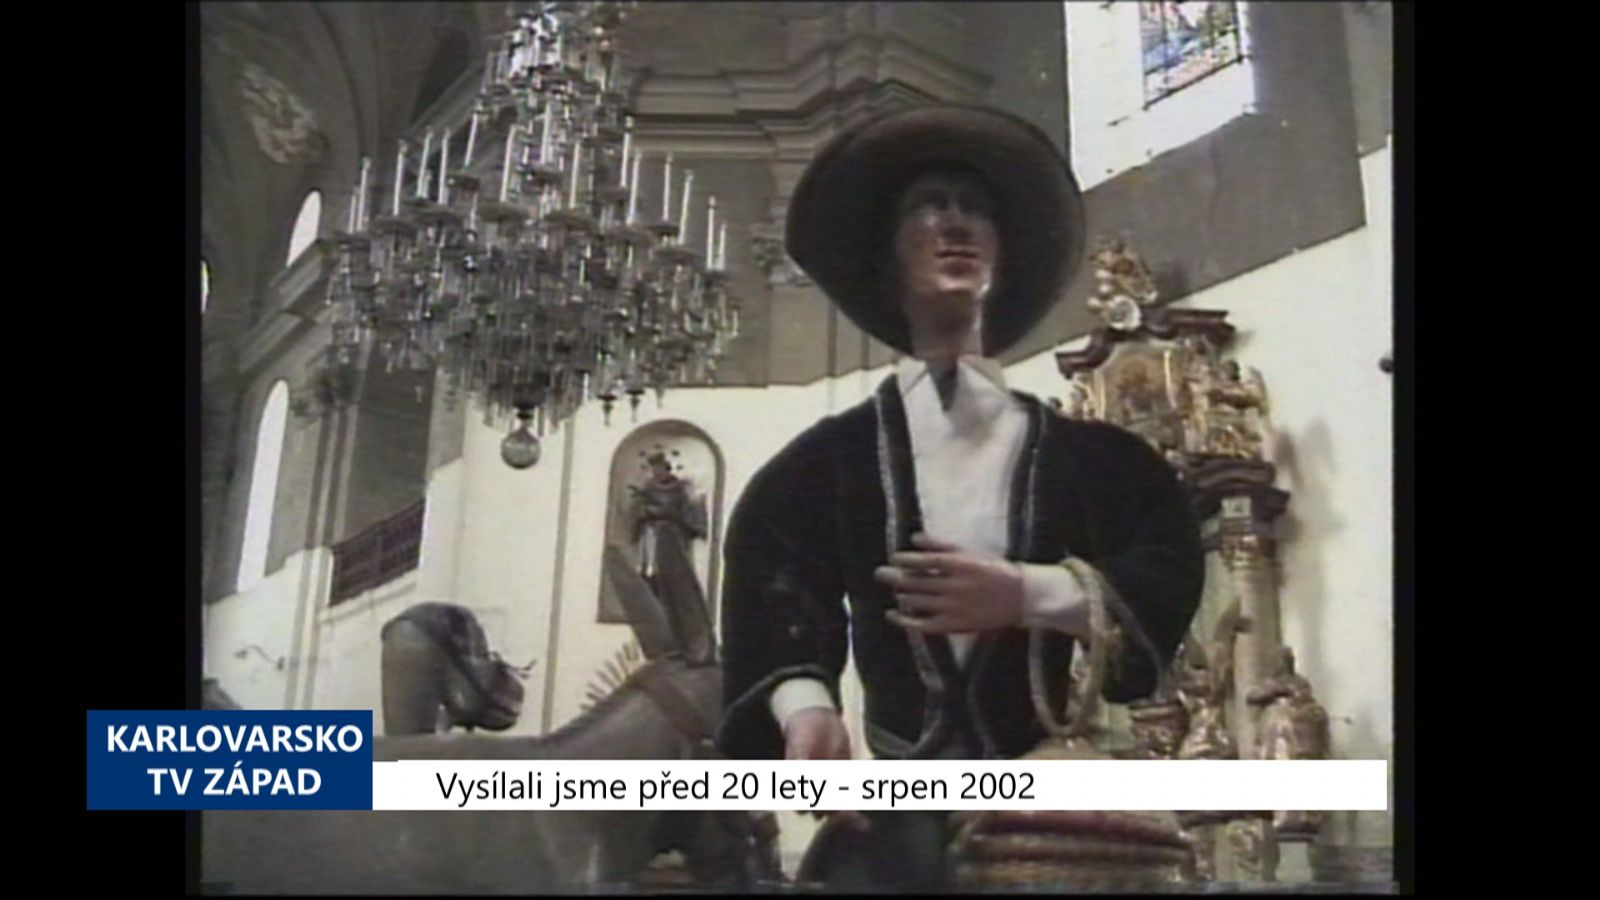 2002 – Kynšperk: Historický betlém byl vyhlášen kulturní památkou (TV Západ)